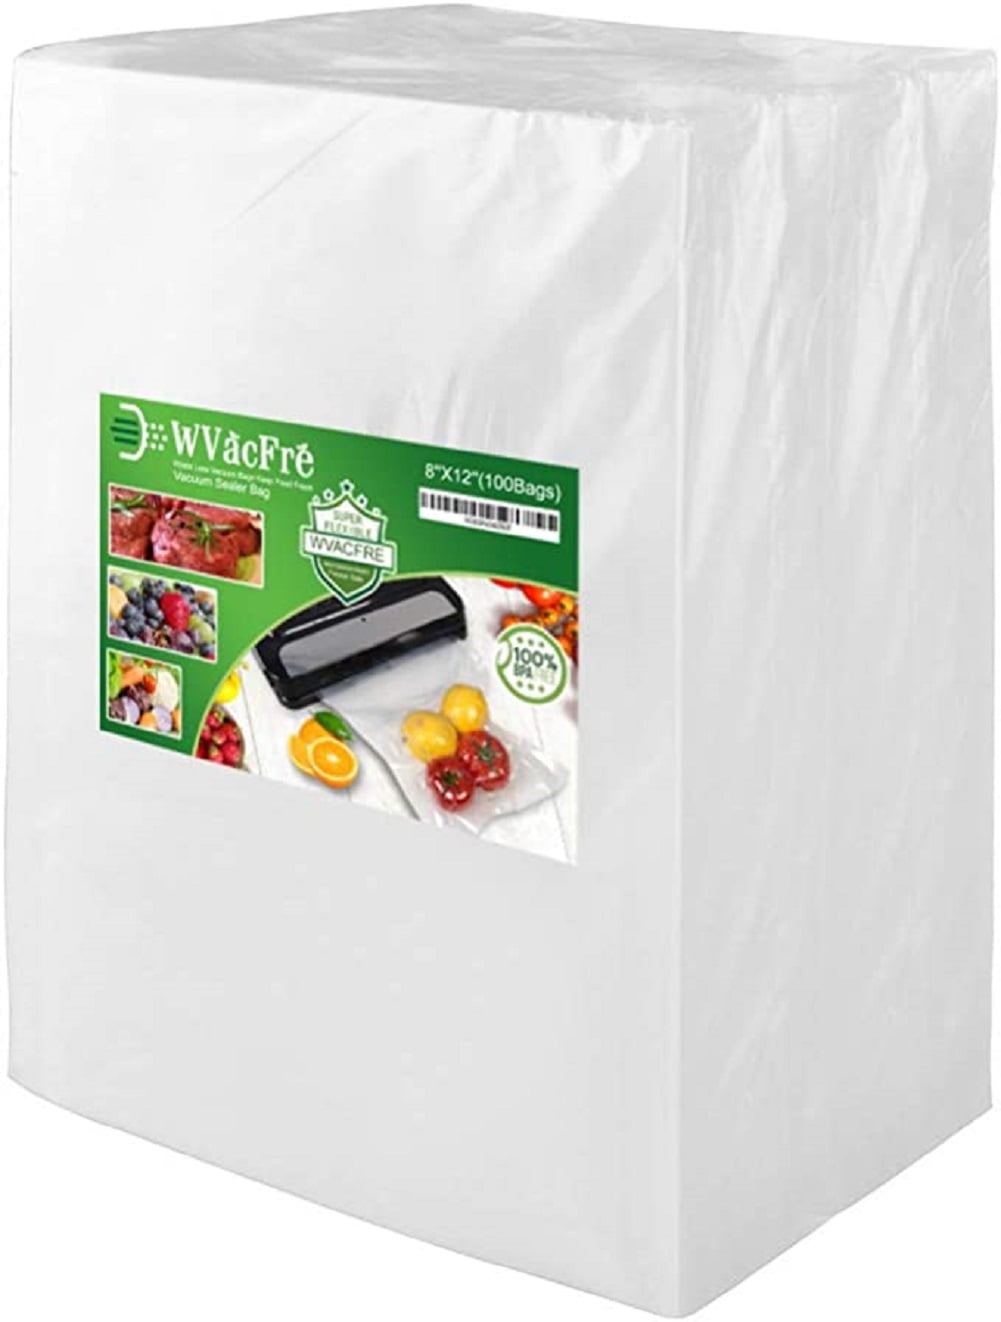 100Pcs Quart 8x12 Pint 6x10 Embossed Vacuum Sealer Bags Food Saver  Storage